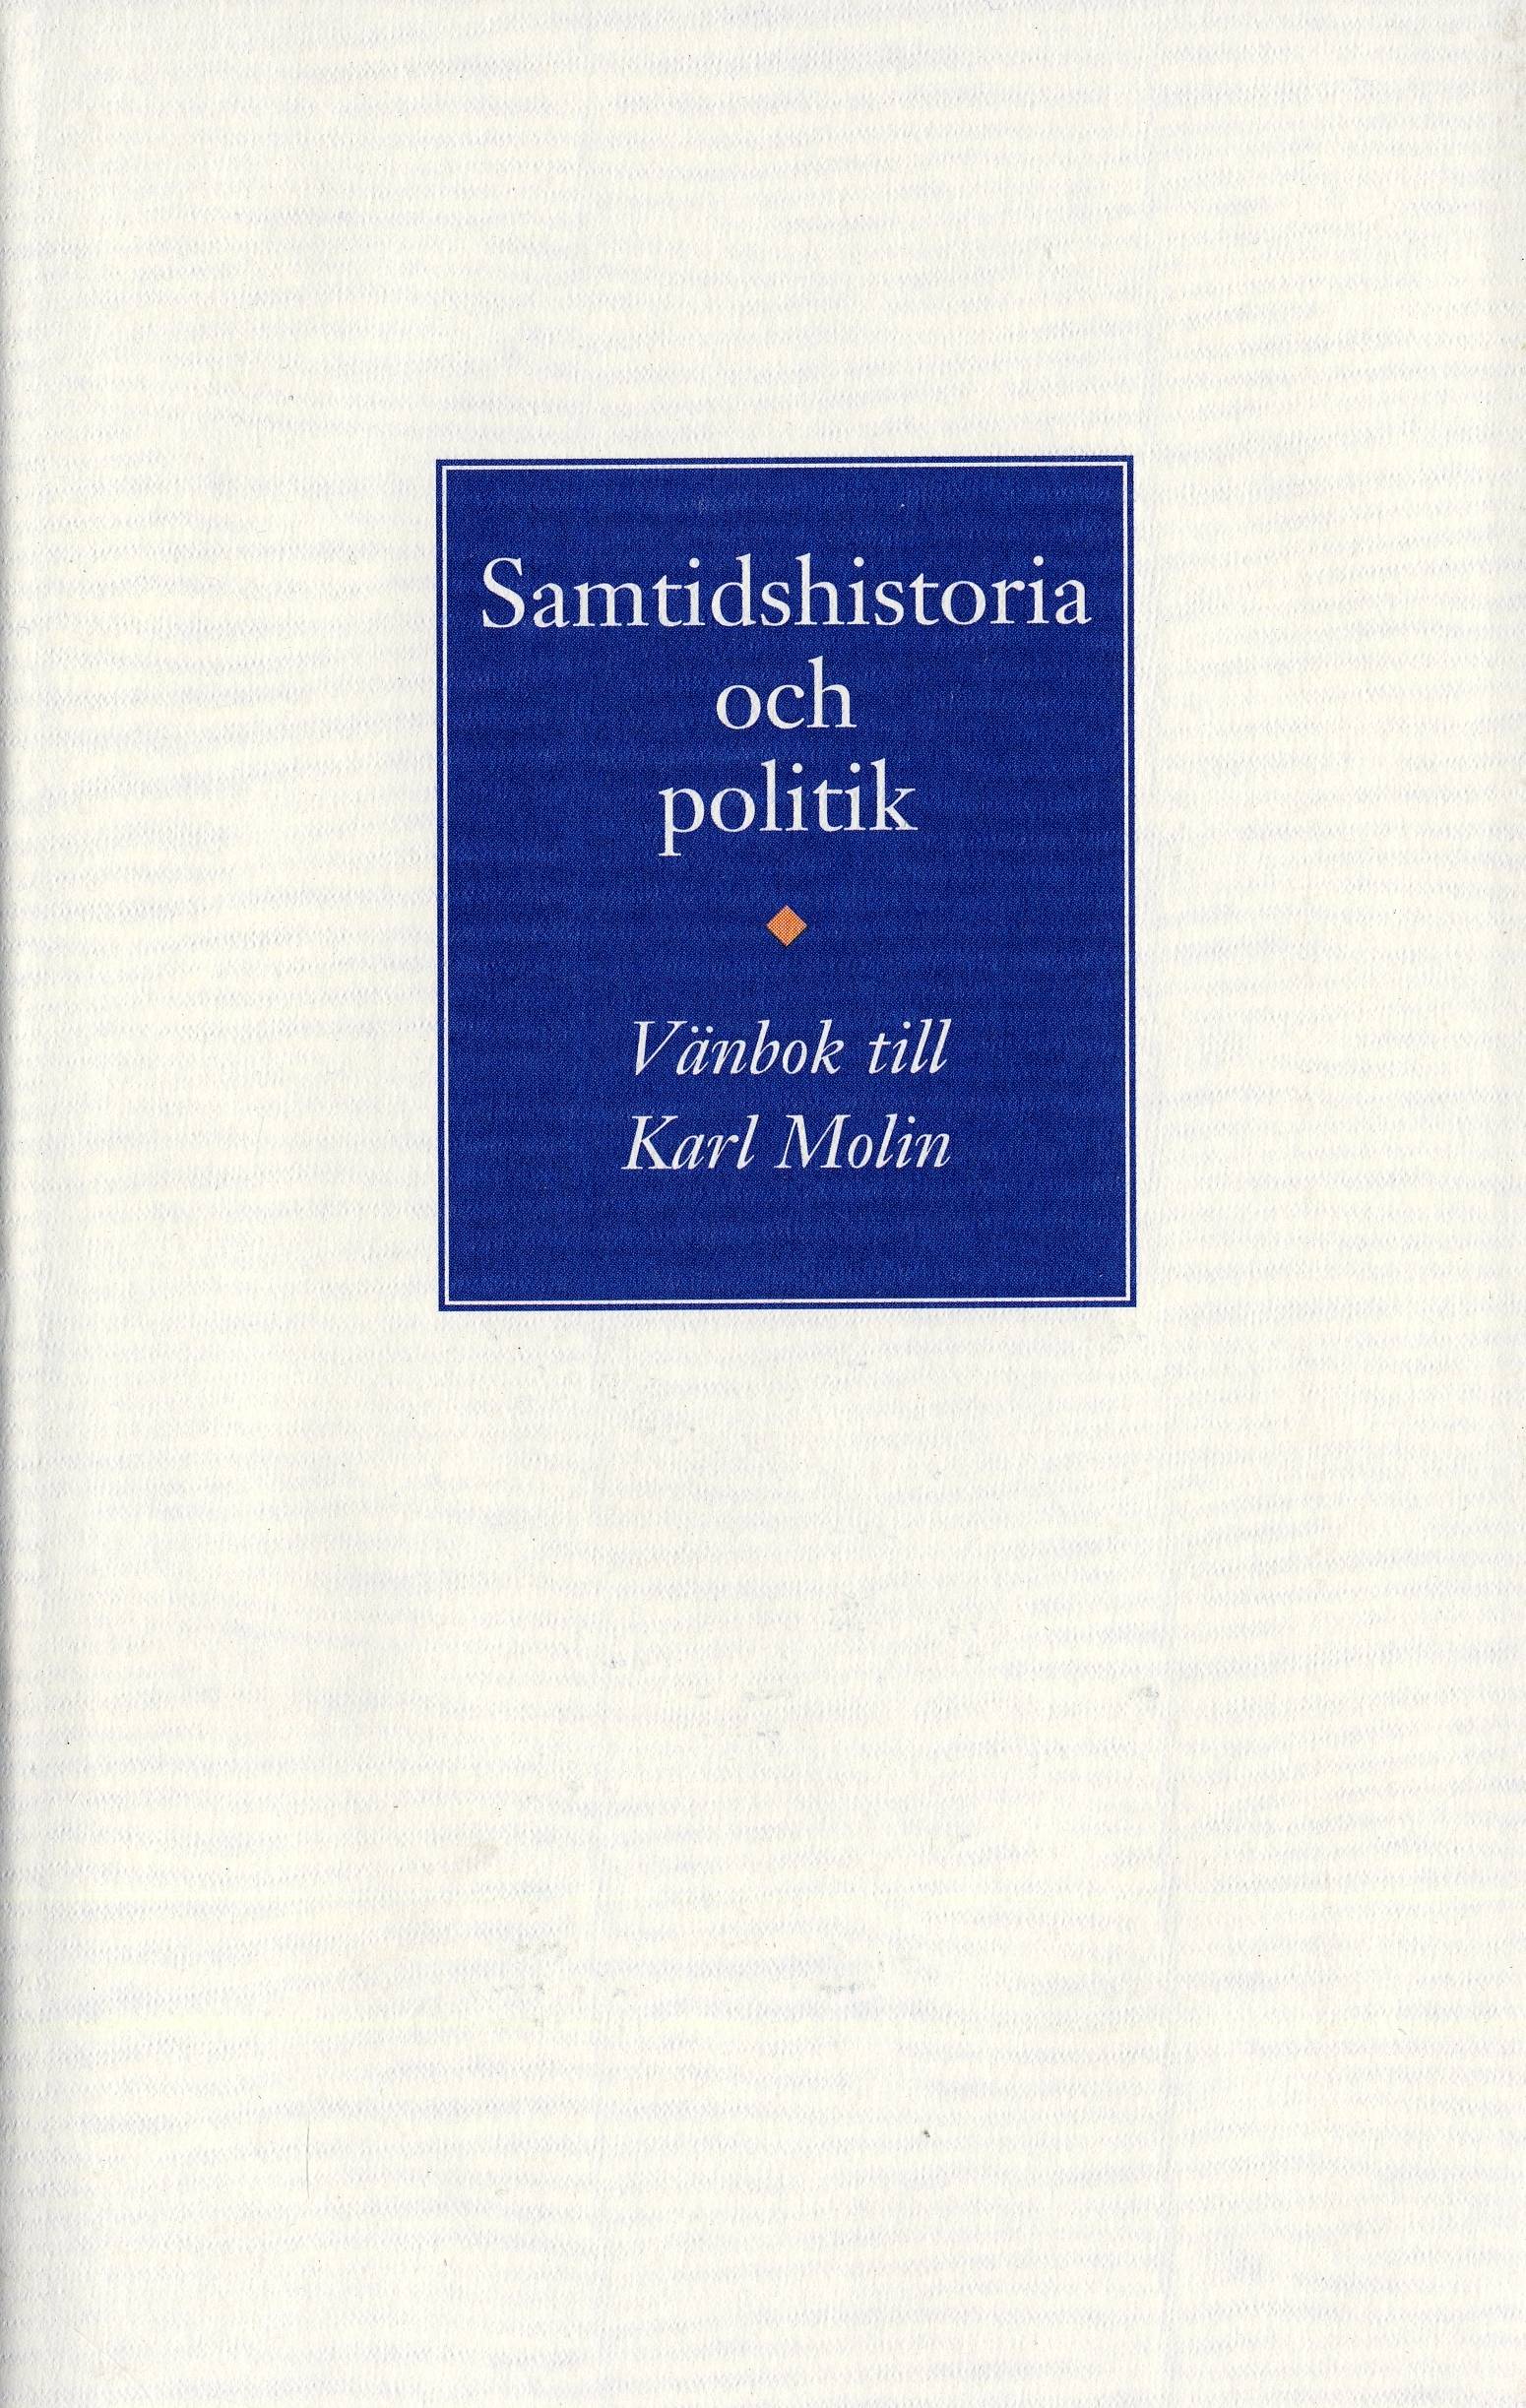 Samtidshistoria och politik. Vänbok till Karl Molin